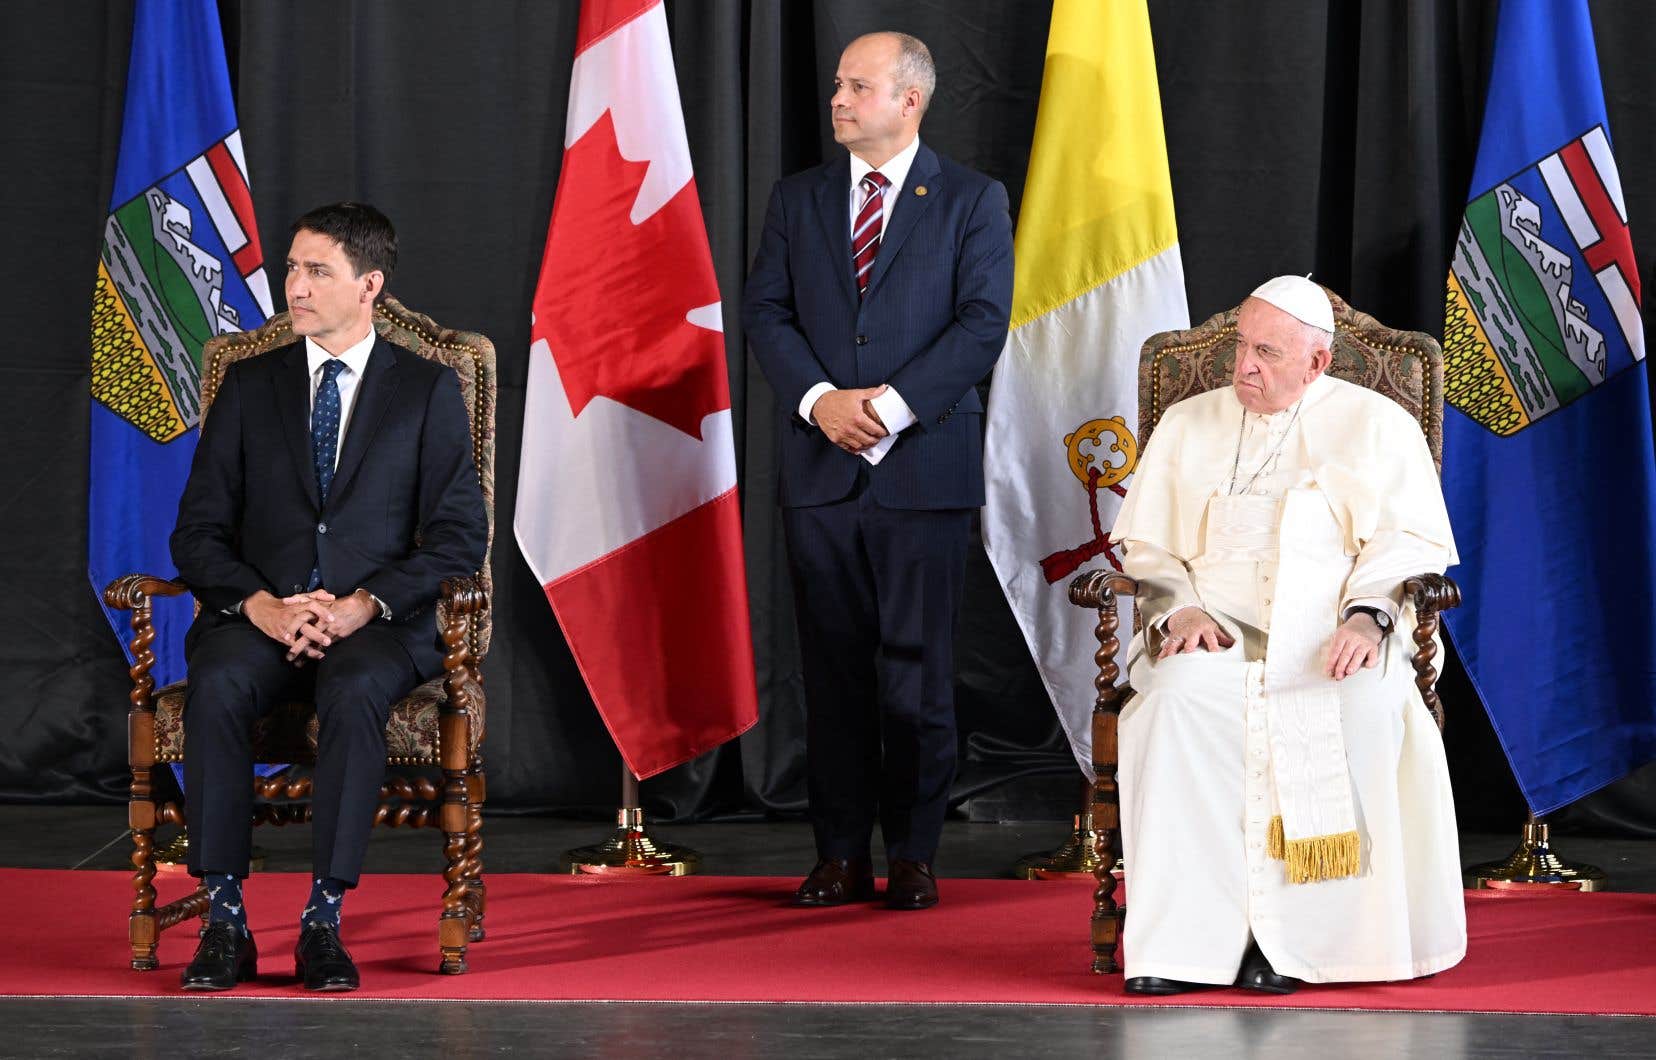 Папа в Канаде кратко пообщался с Трюдо и вновь заявил, что хотел бы посетить Украину